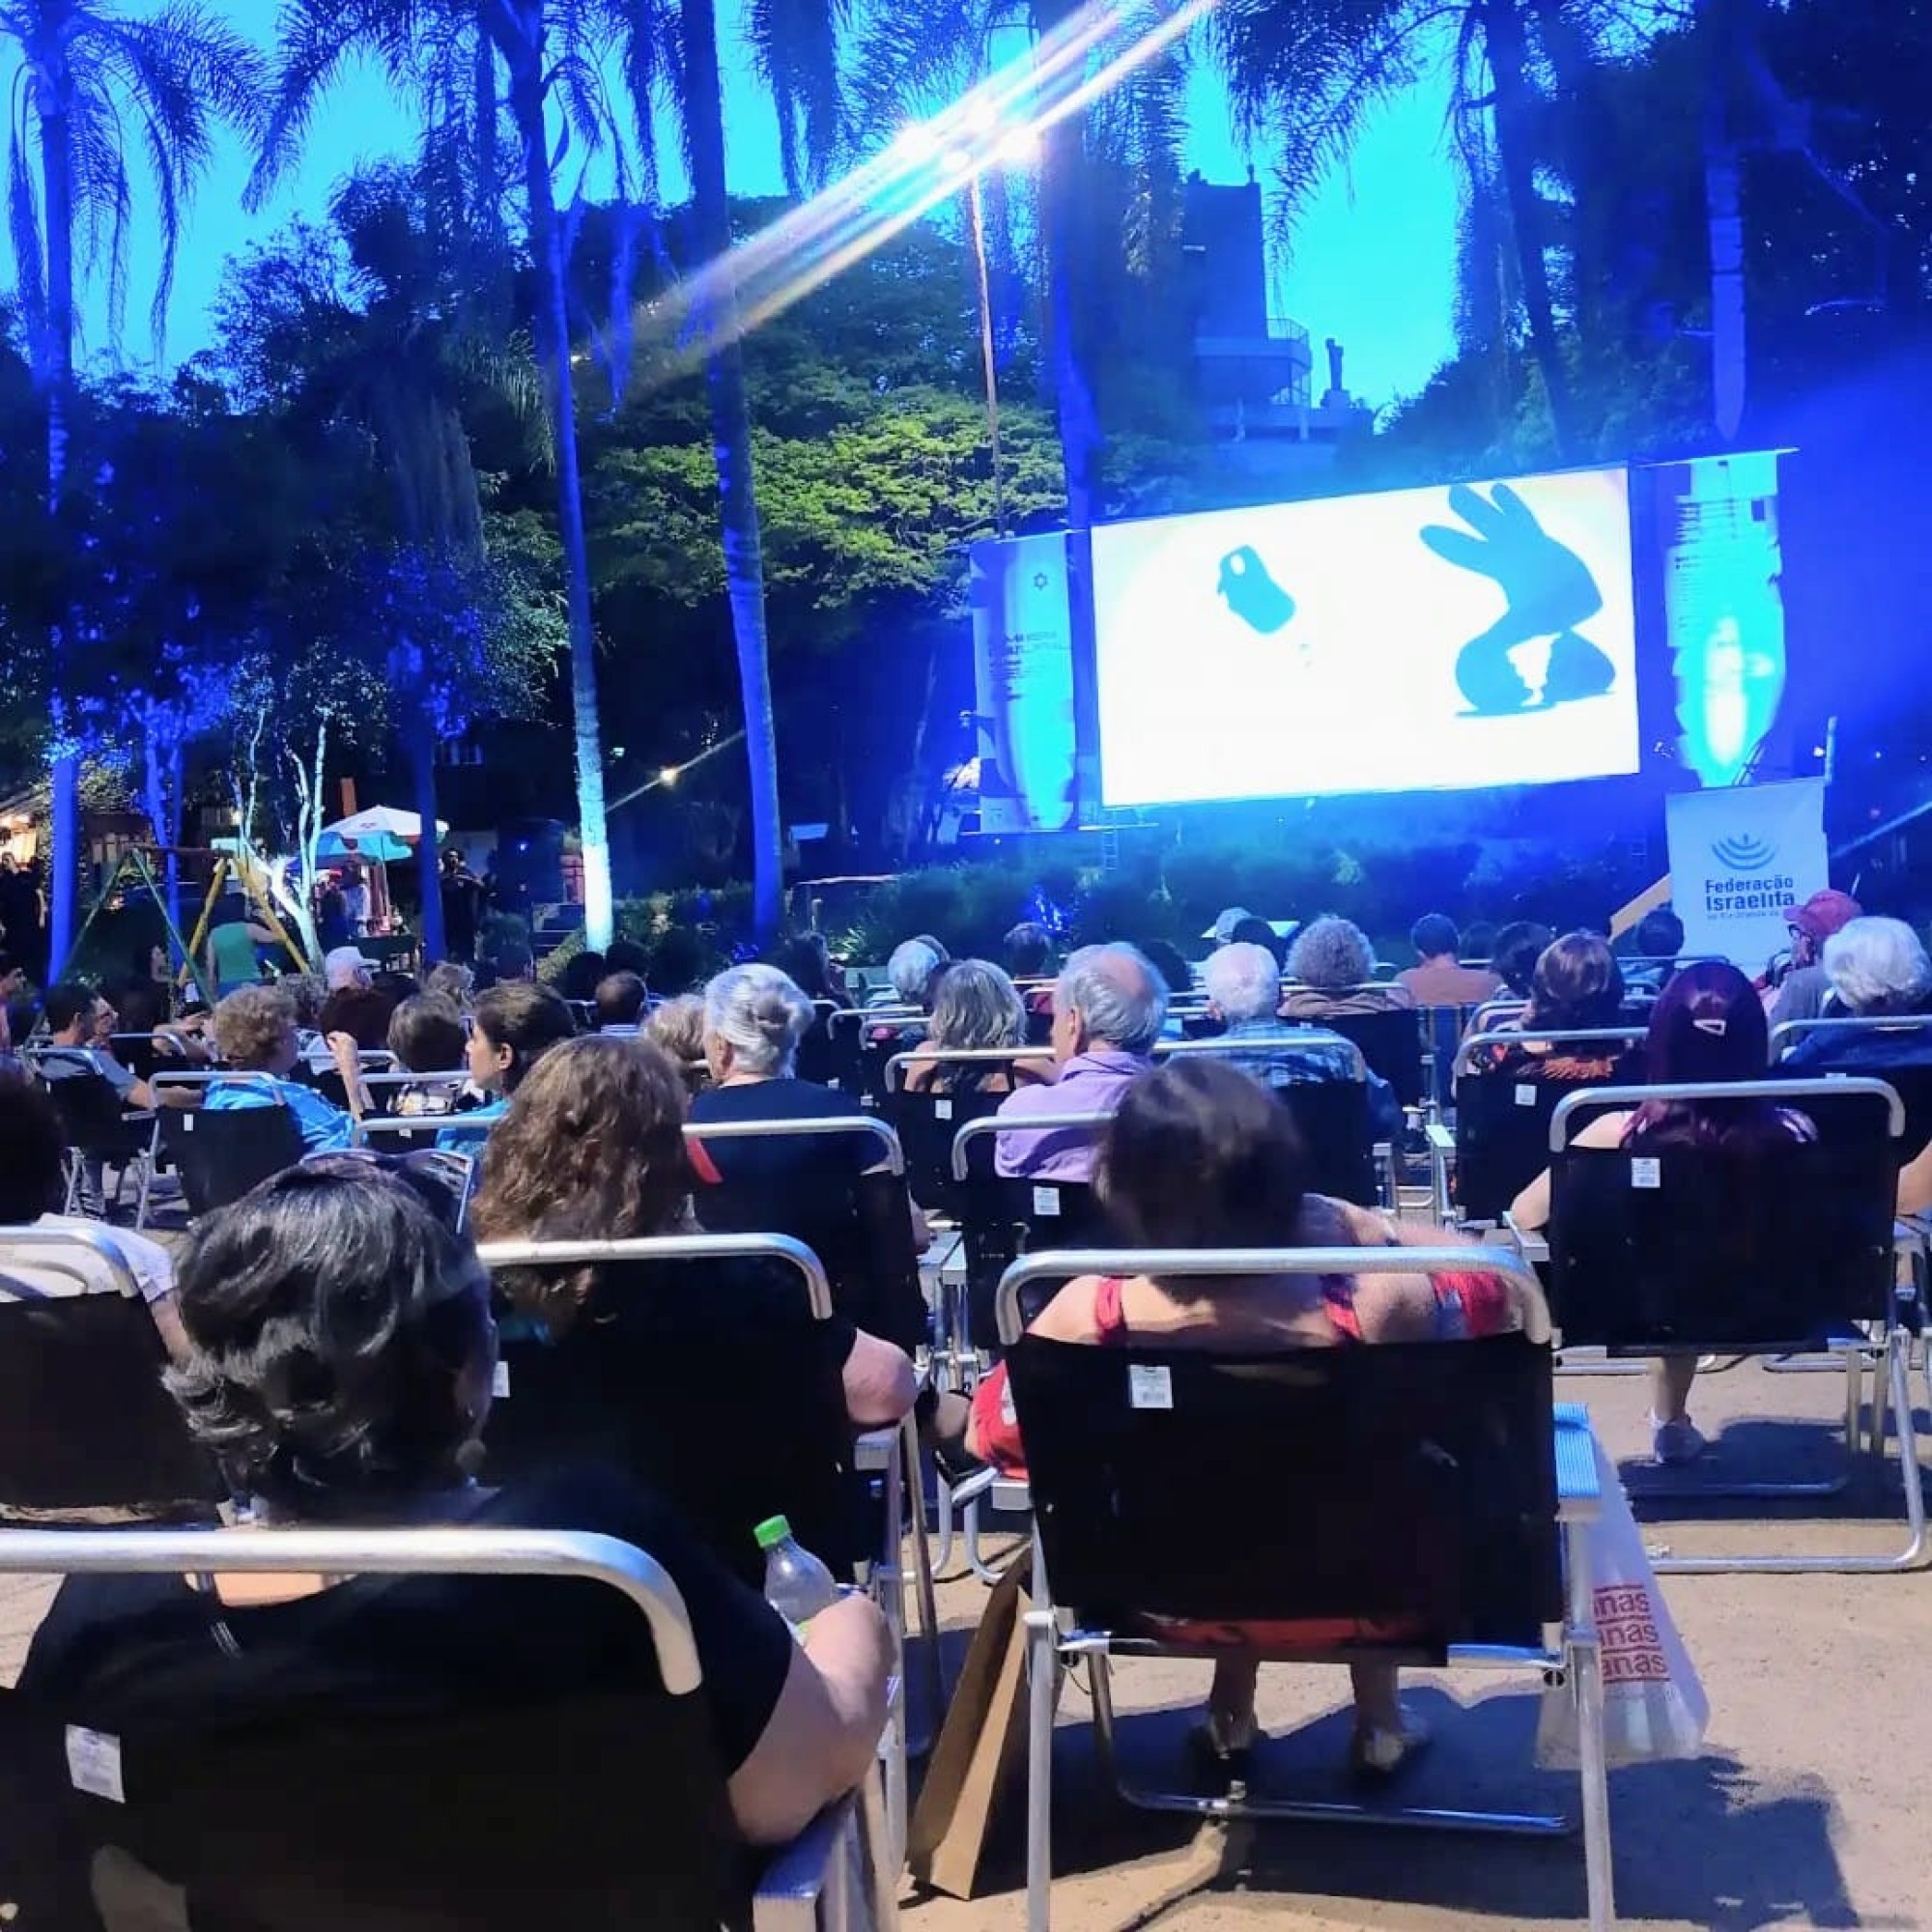 Primeira edição do Cine Israel reúne mais de 500 pessoas em praça de Porto Alegre - Fundada em 1948, a CONIB – Confederação Israelita do Brasil é o órgão de representação e coordenação política da comunidade judaica brasileira. 